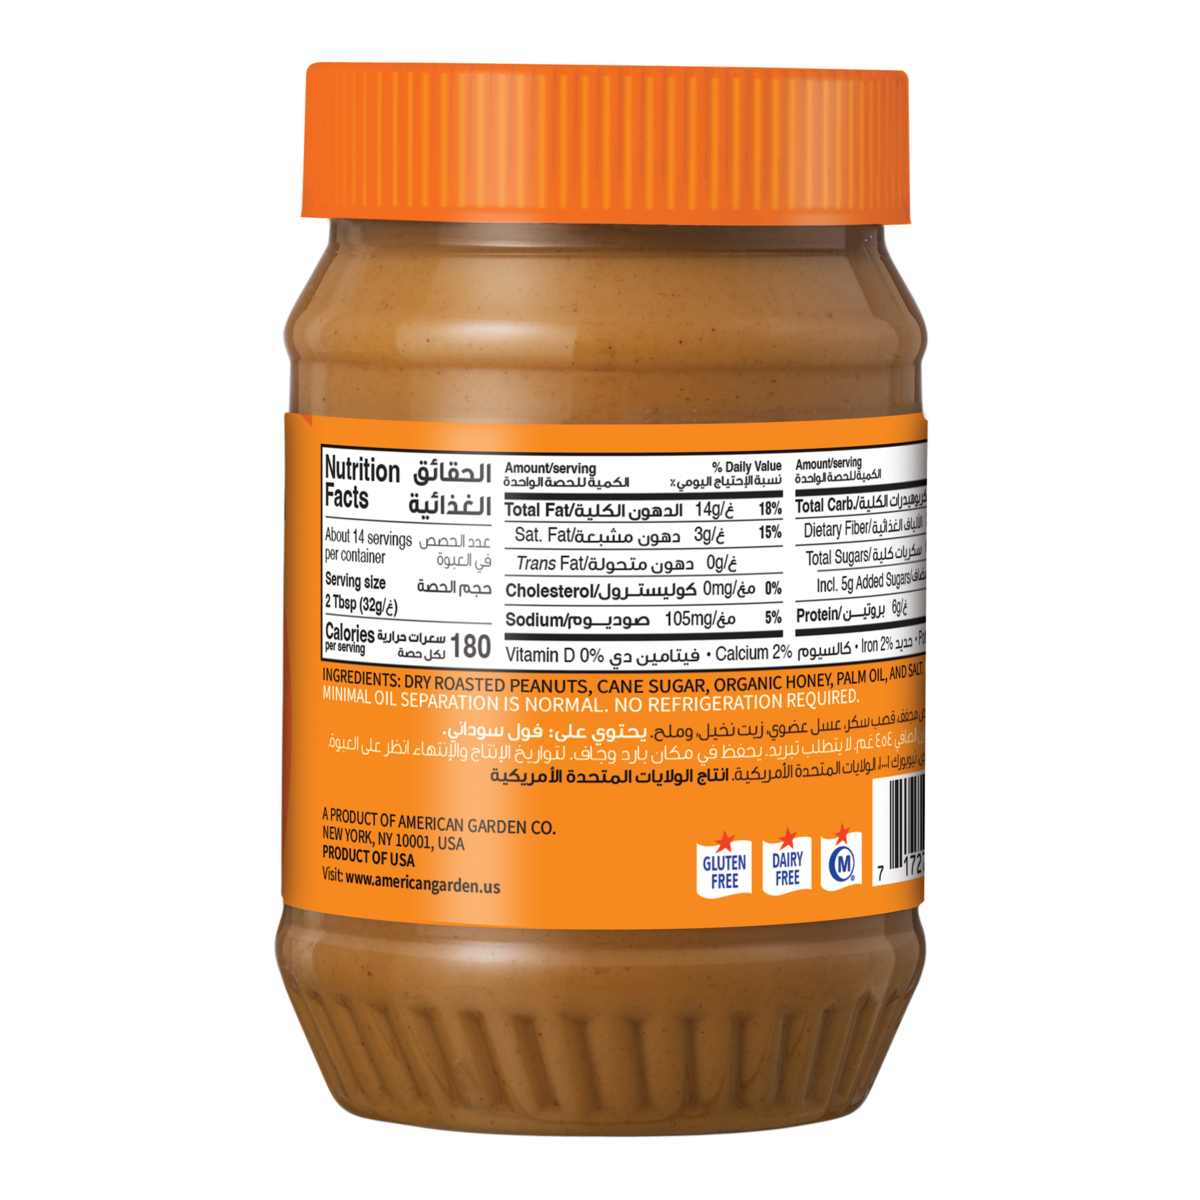 American Garden Gluten Free Natural Honey Peanut Butter 454 g